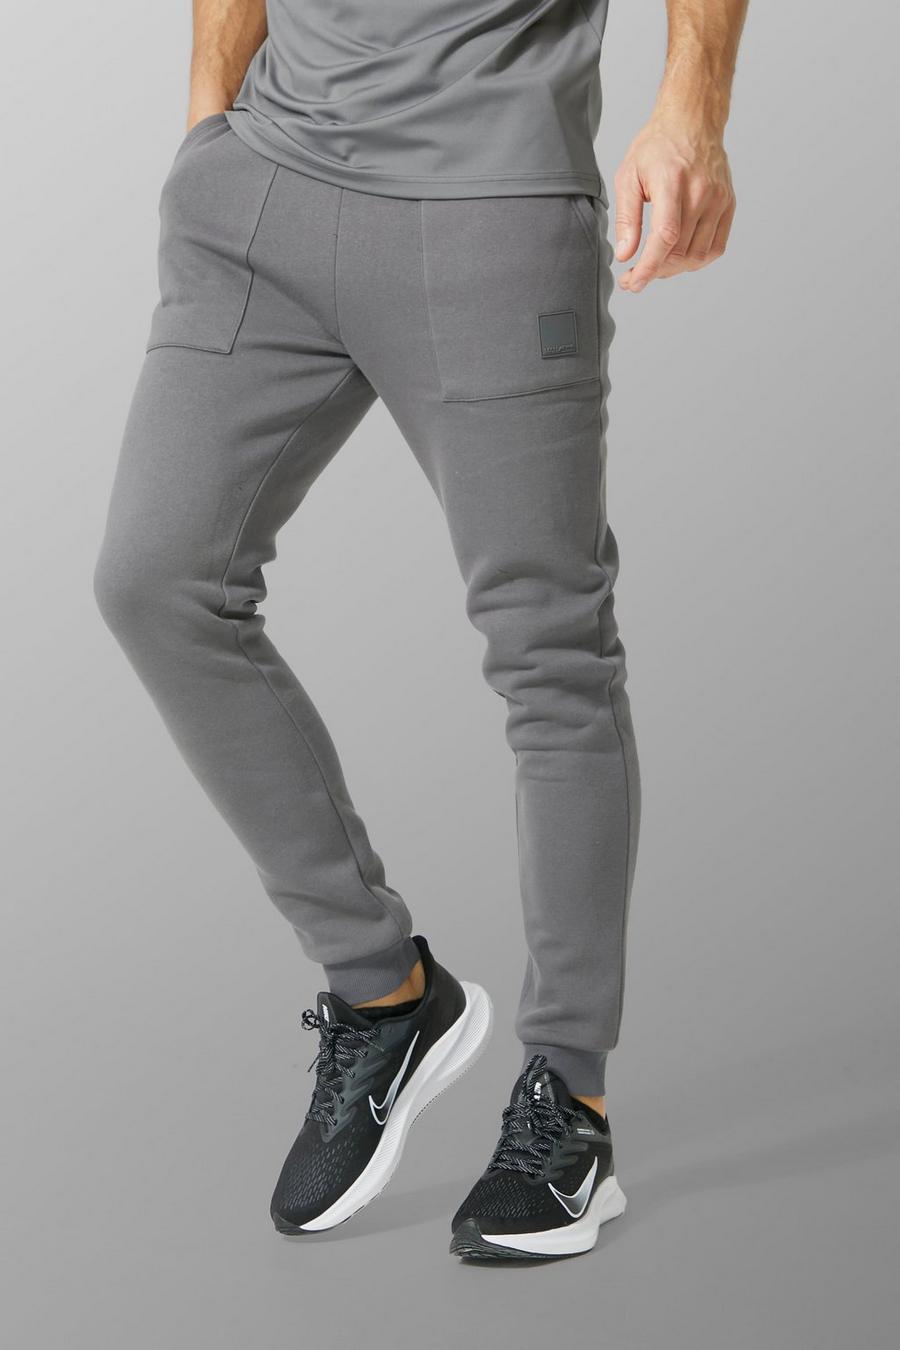 Pantaloni tuta Tall Man Active Gym con dettagli su una tasca, Charcoal grigio